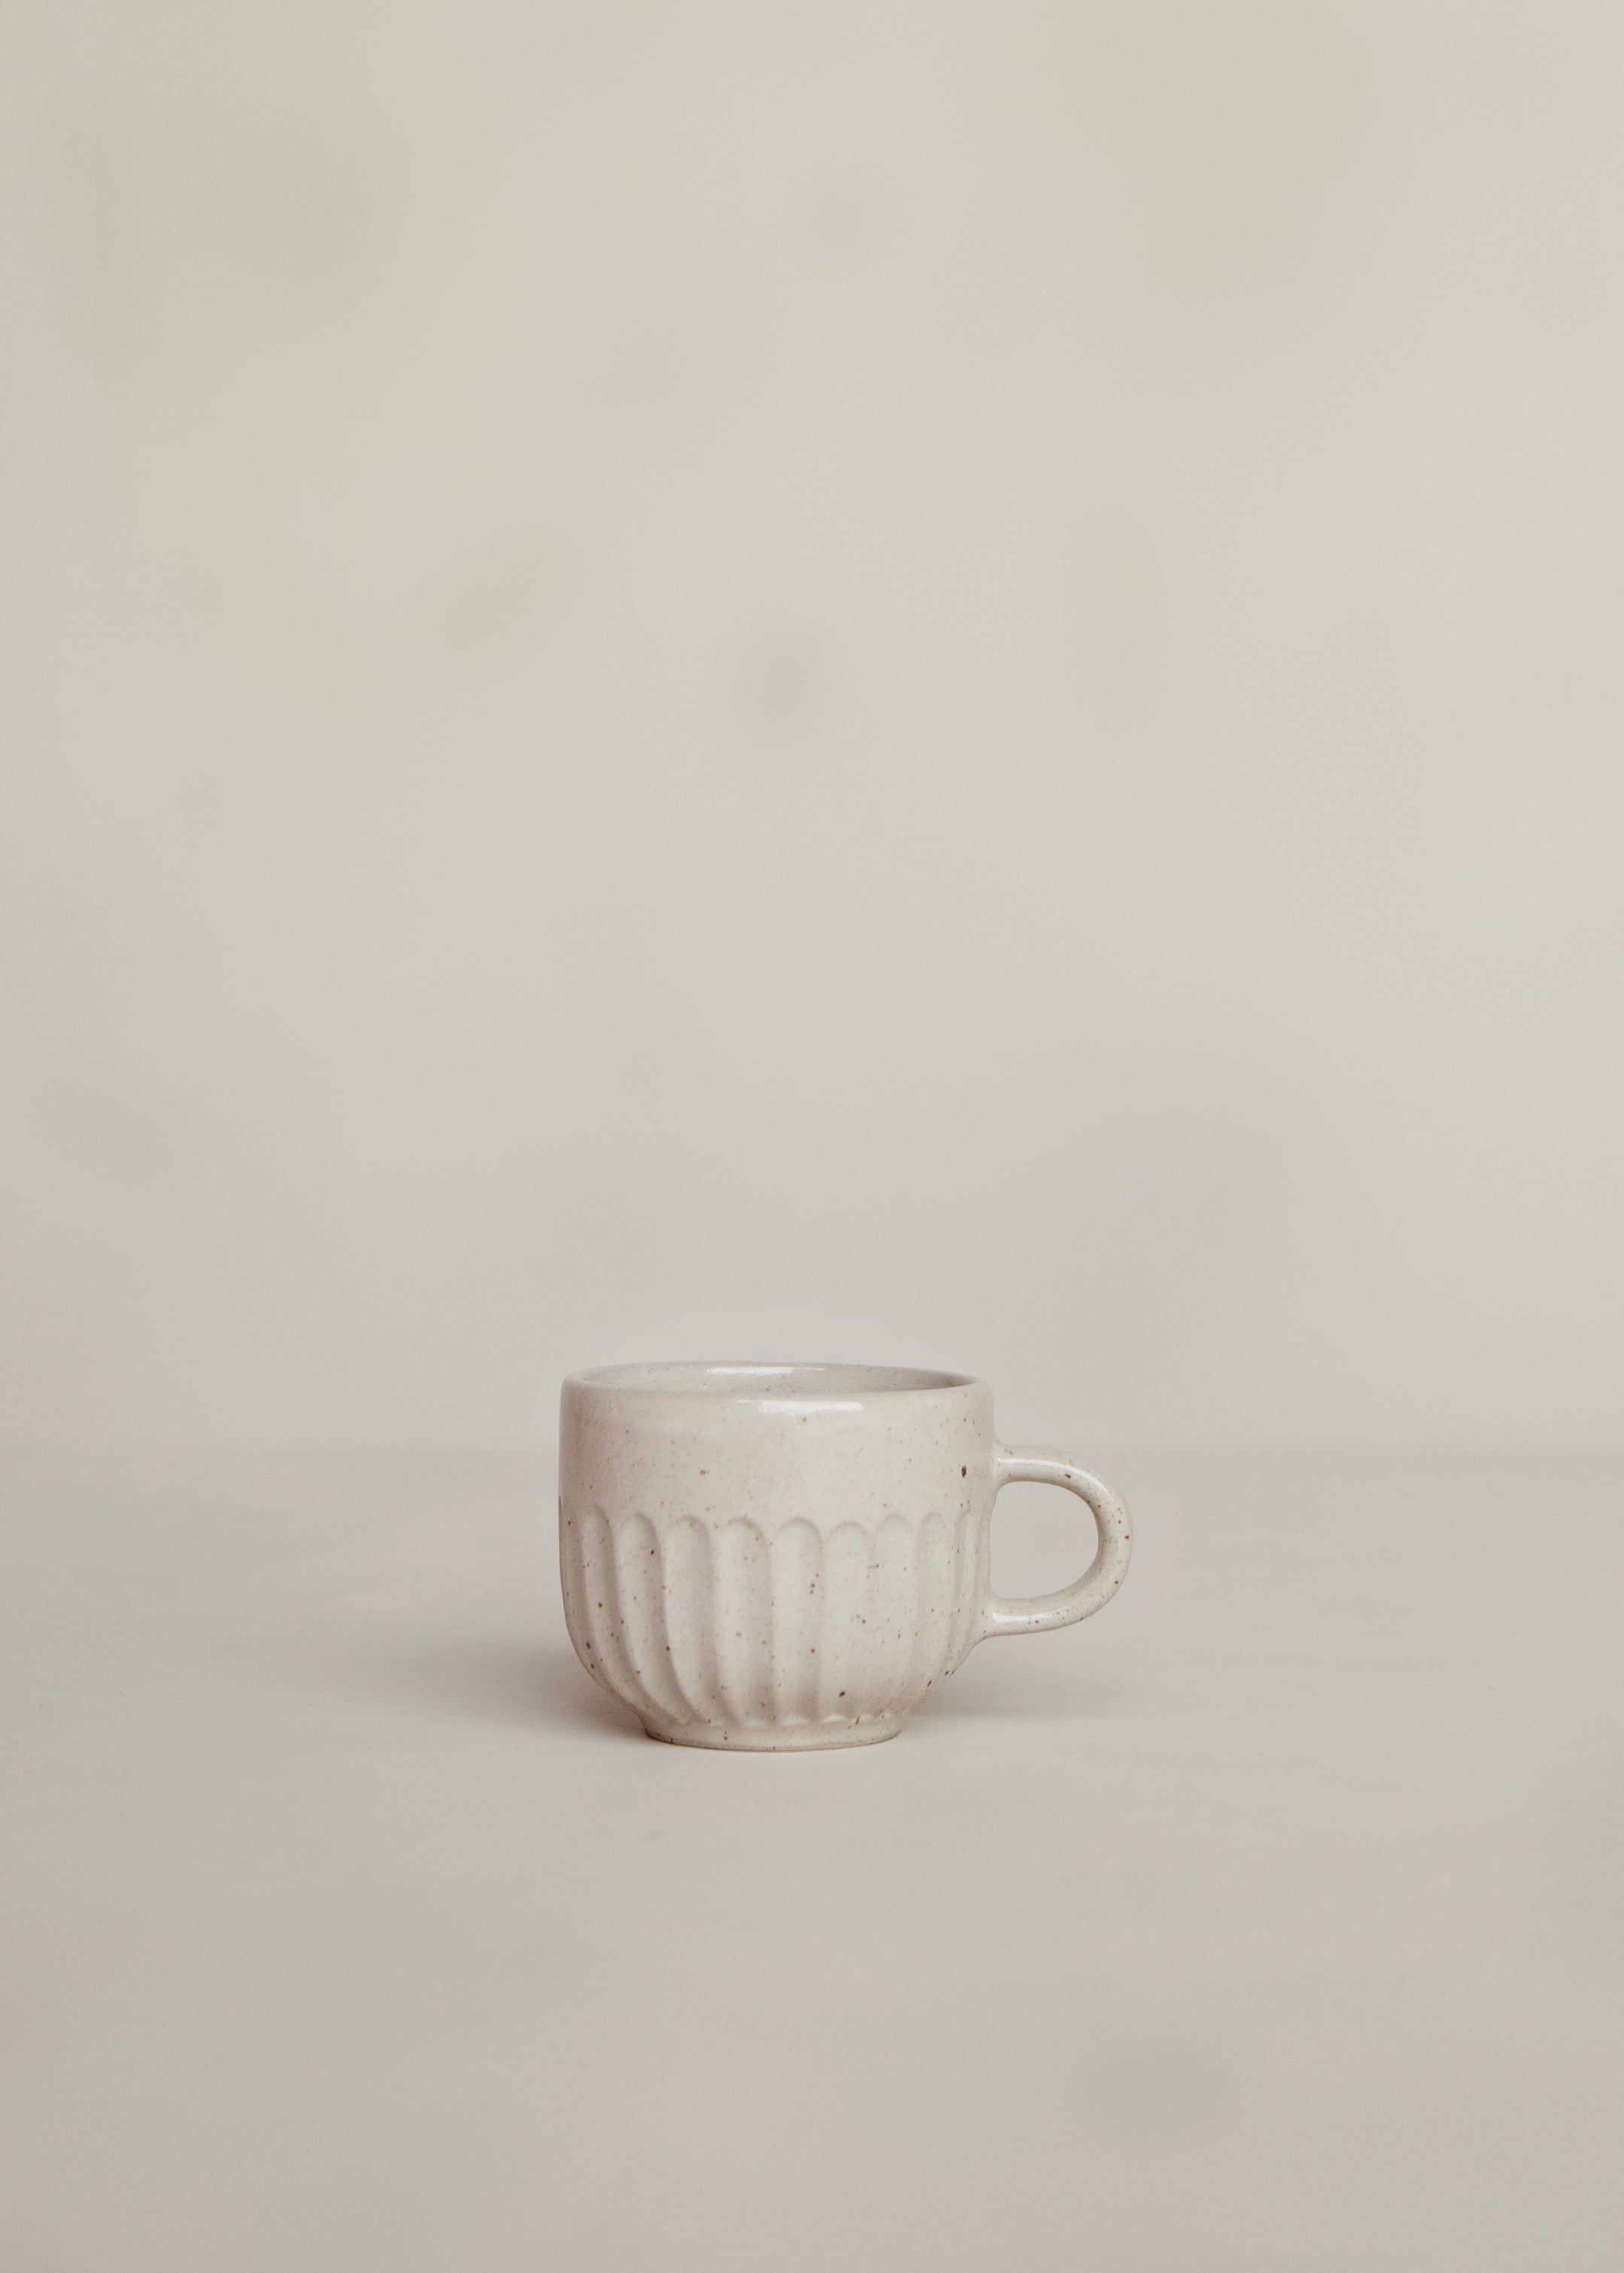 Meru Cup / Speckled Cream